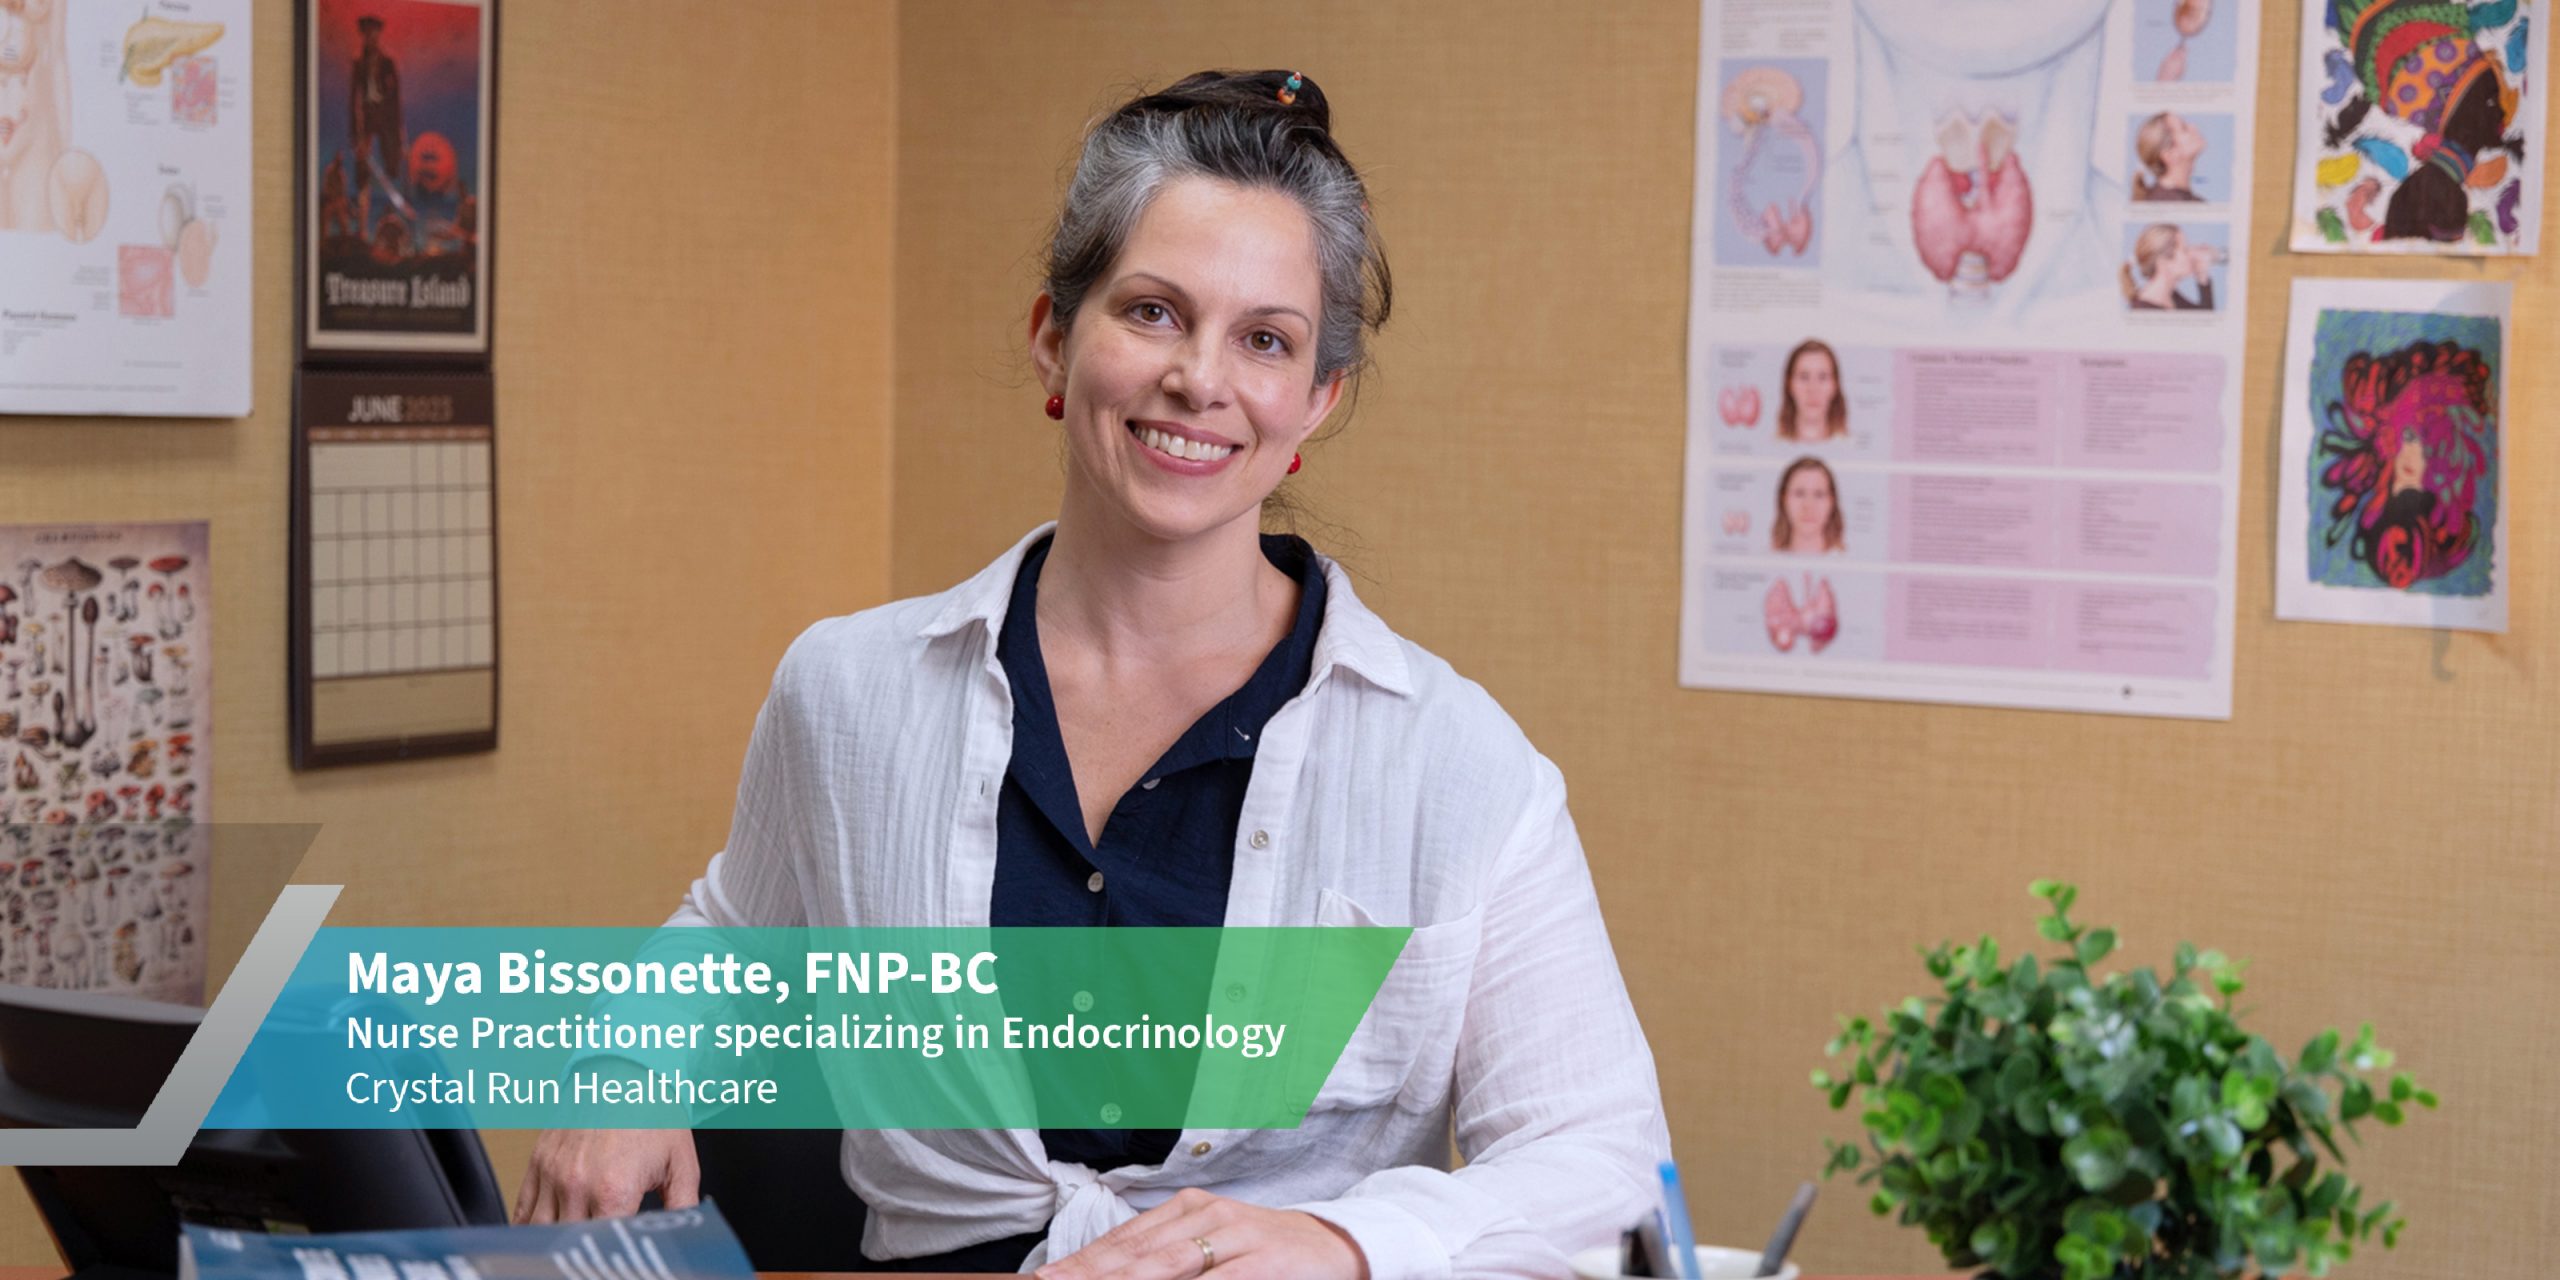 Maya Bissonette, FNP-BC | Nursing Practitioner specializing in Endocrinology, Crystal Run Healthcare